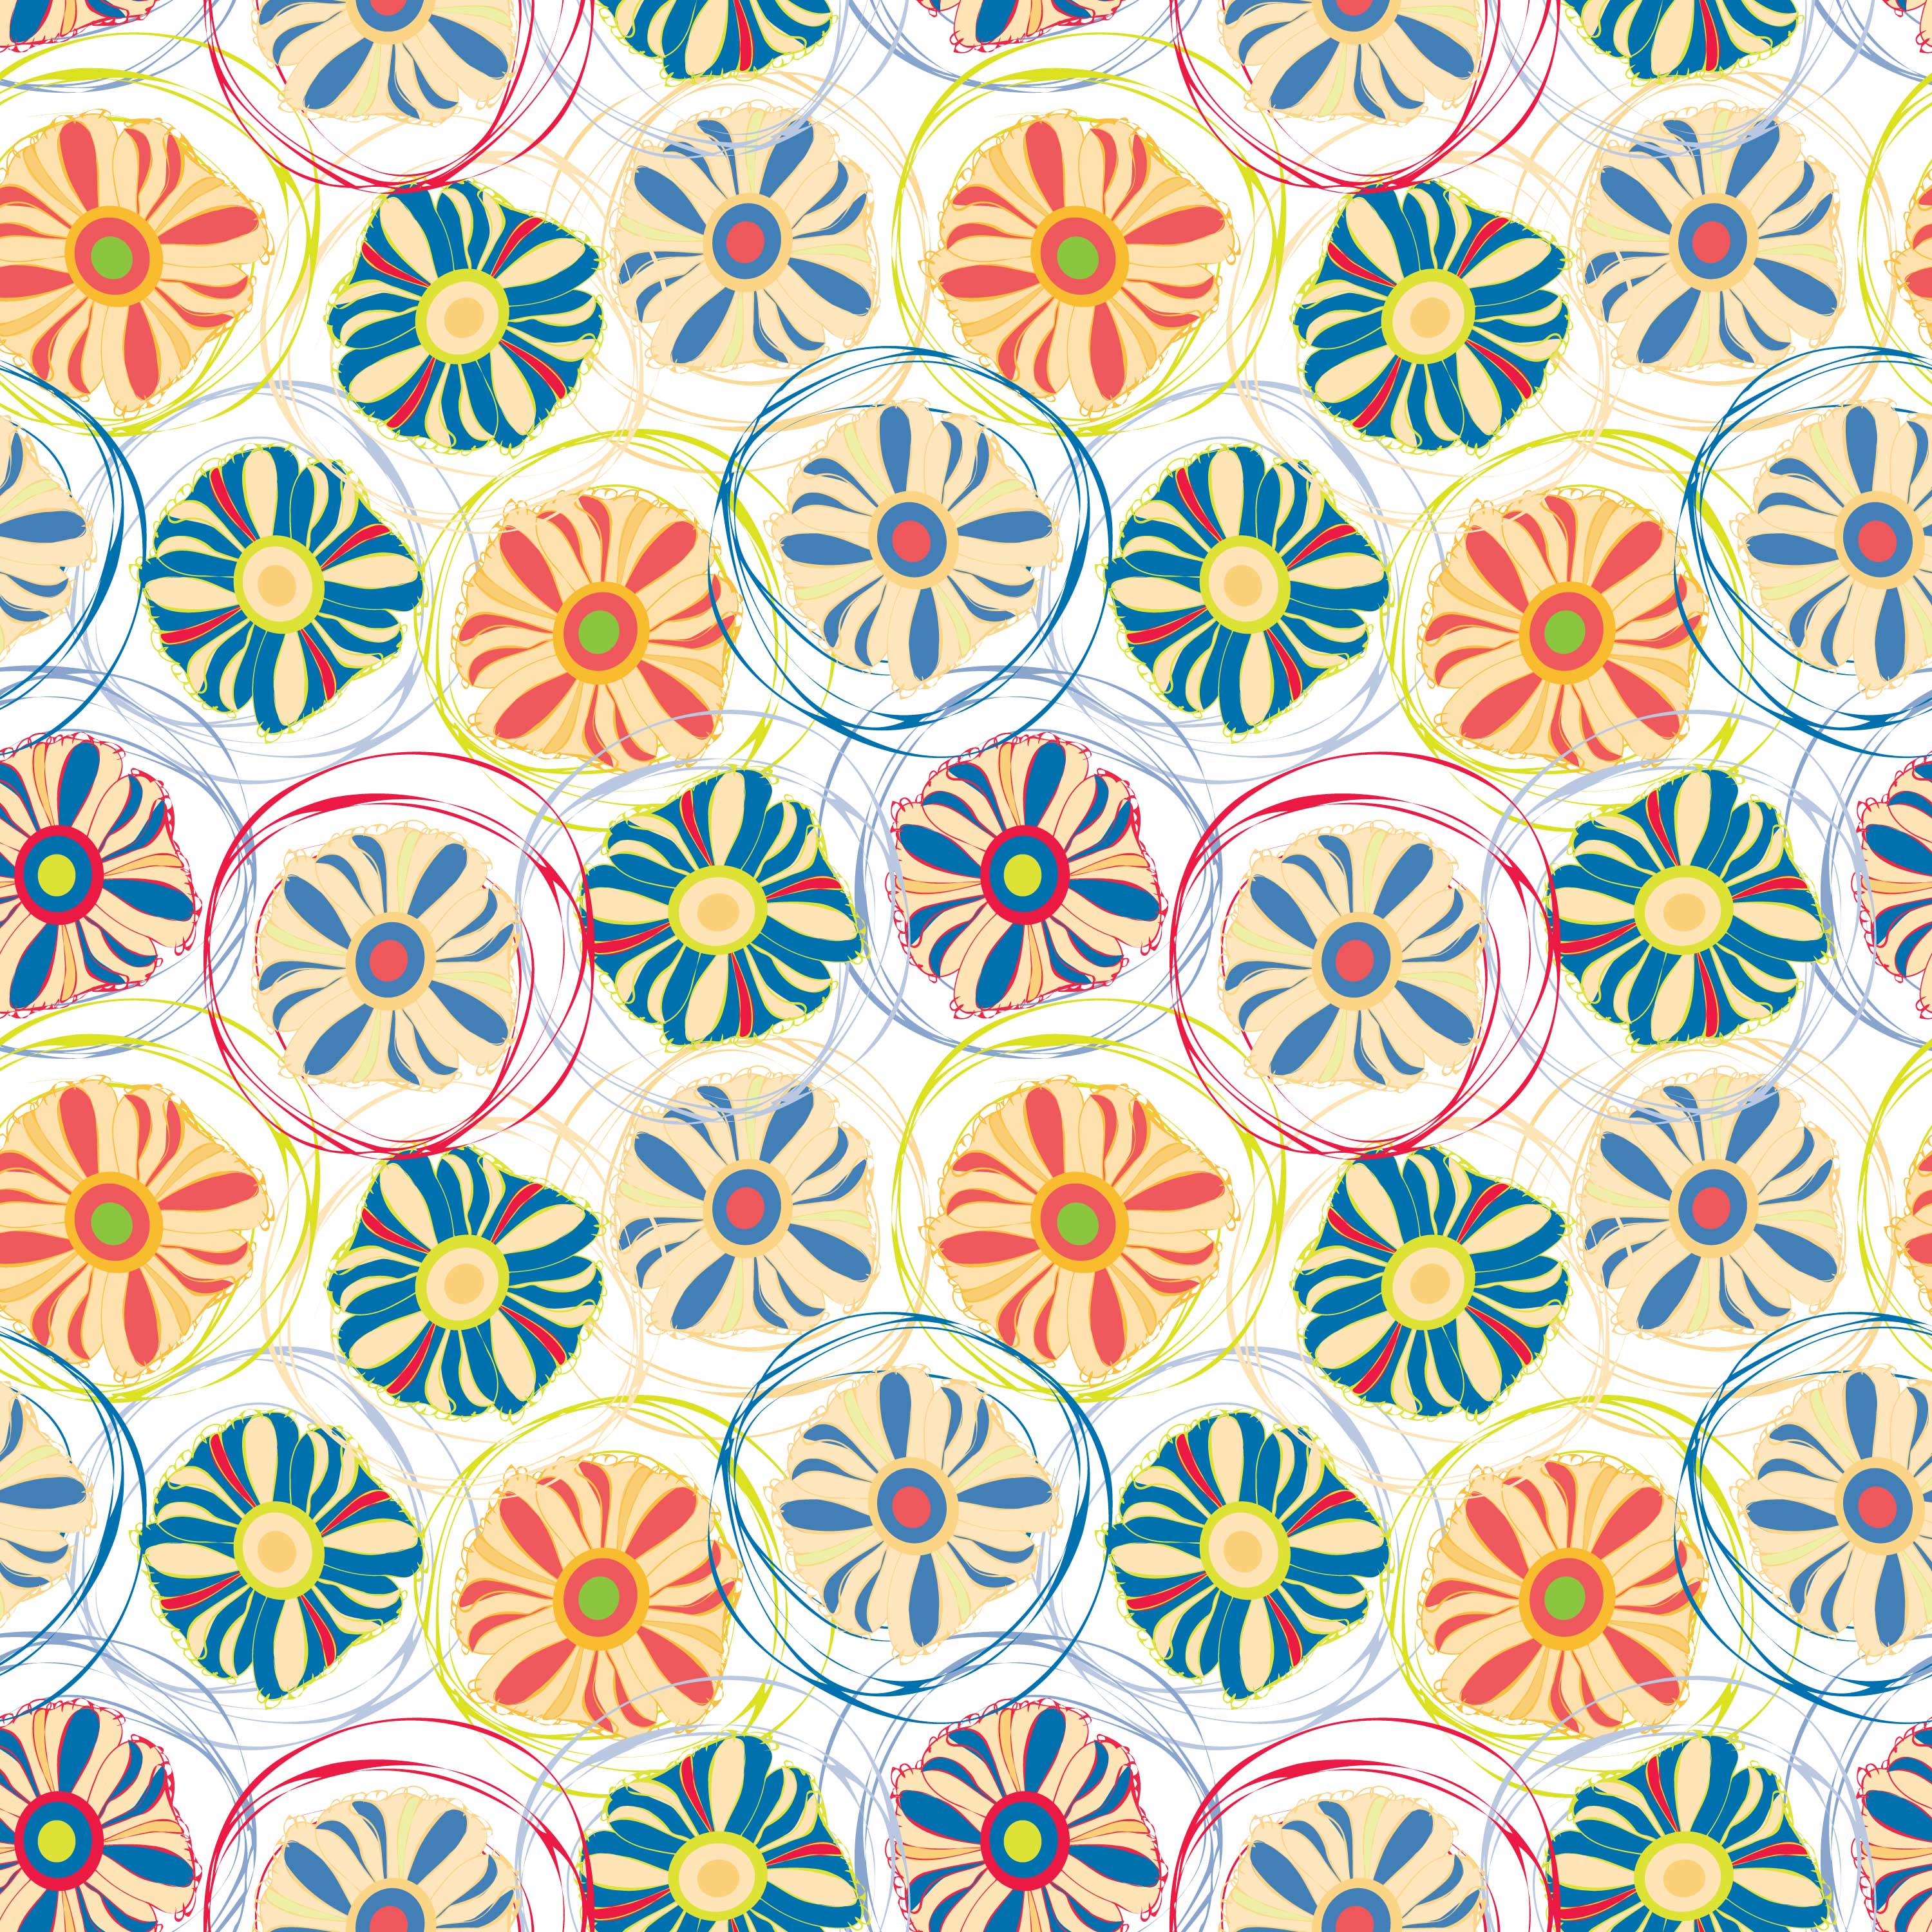 壁紙 背景イラスト 花の模様 柄 パターン No 130 手書き風枠